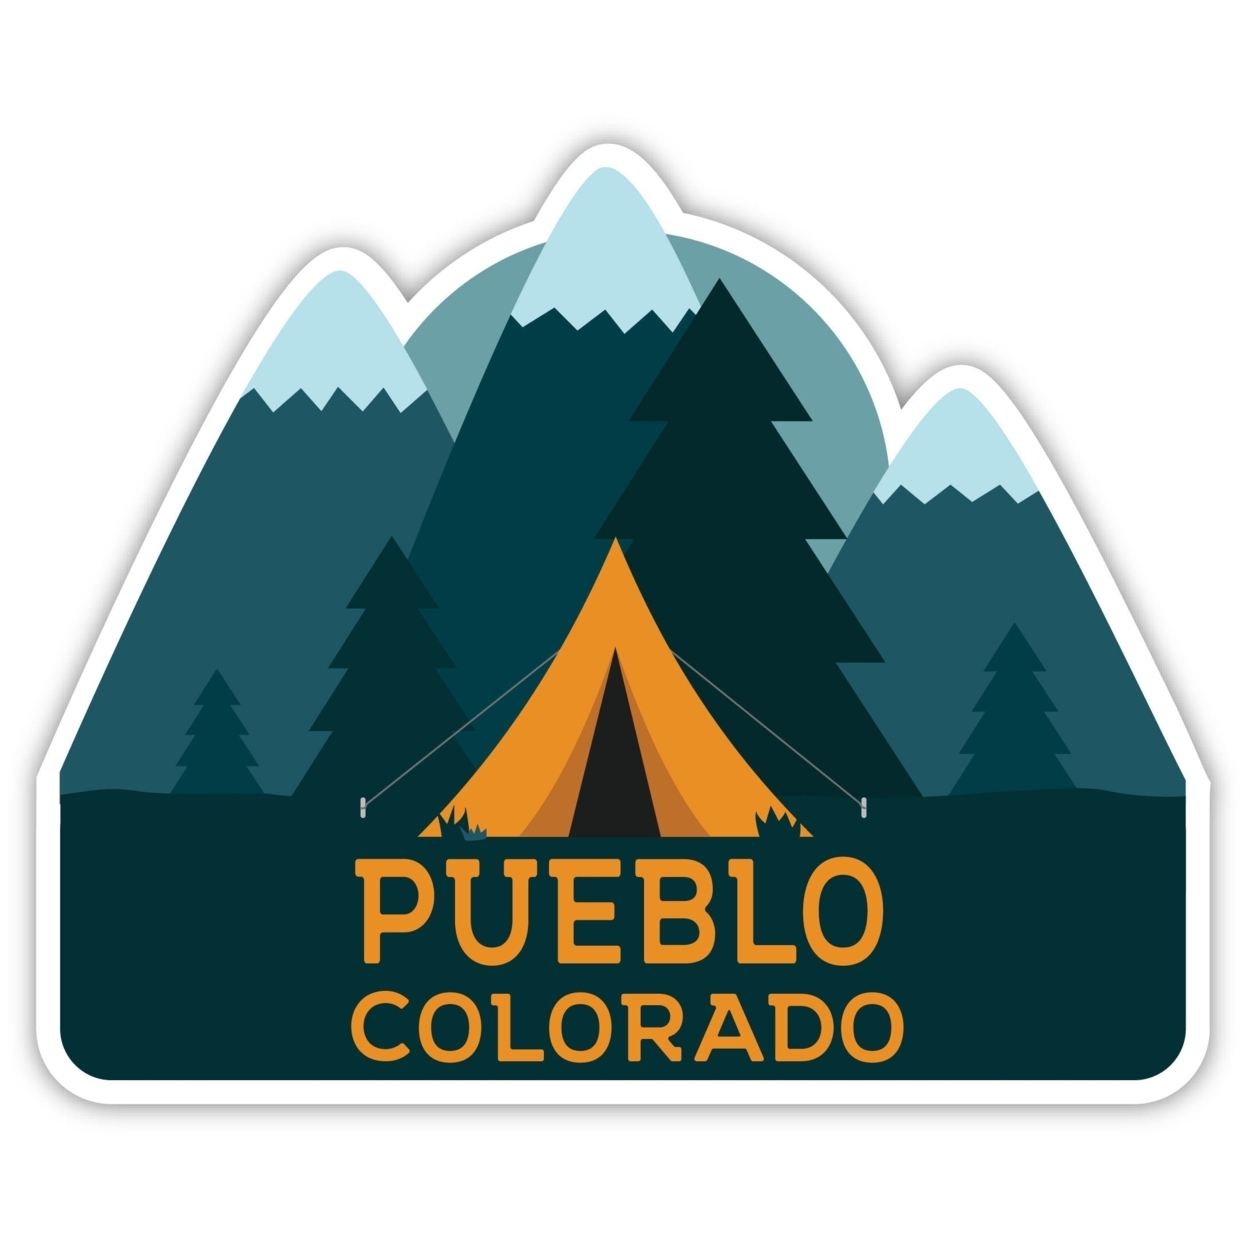 Pueblo Colorado Souvenir Decorative Stickers (Choose Theme And Size) - Single Unit, 2-Inch, Adventures Awaits